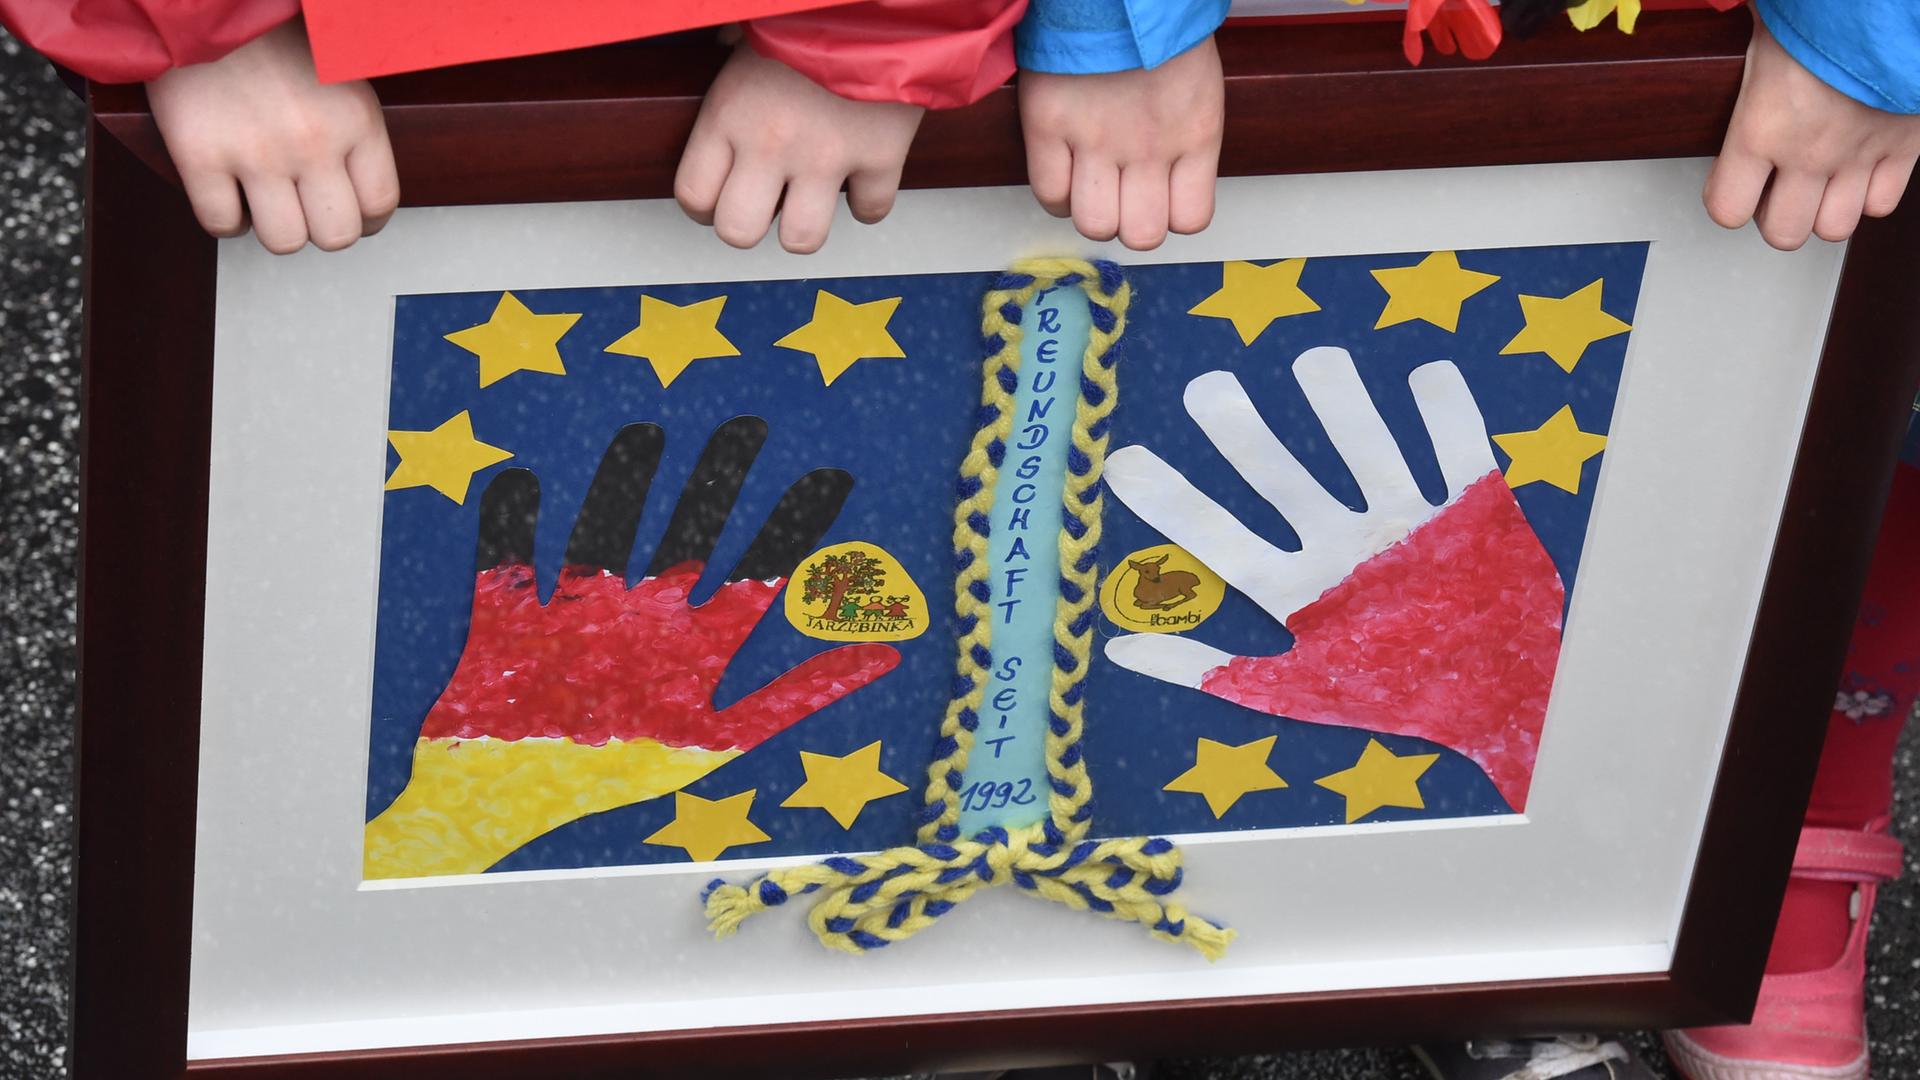 Zwei Kinder der Kita Bambi aus Frankfurt (Oder) halten ein selbst gemaltes Bild in einem Rahmen, das zwei Hände in den polnischen und deutschen Nationalfarben umringt von gelben Europasternen zeigt. 